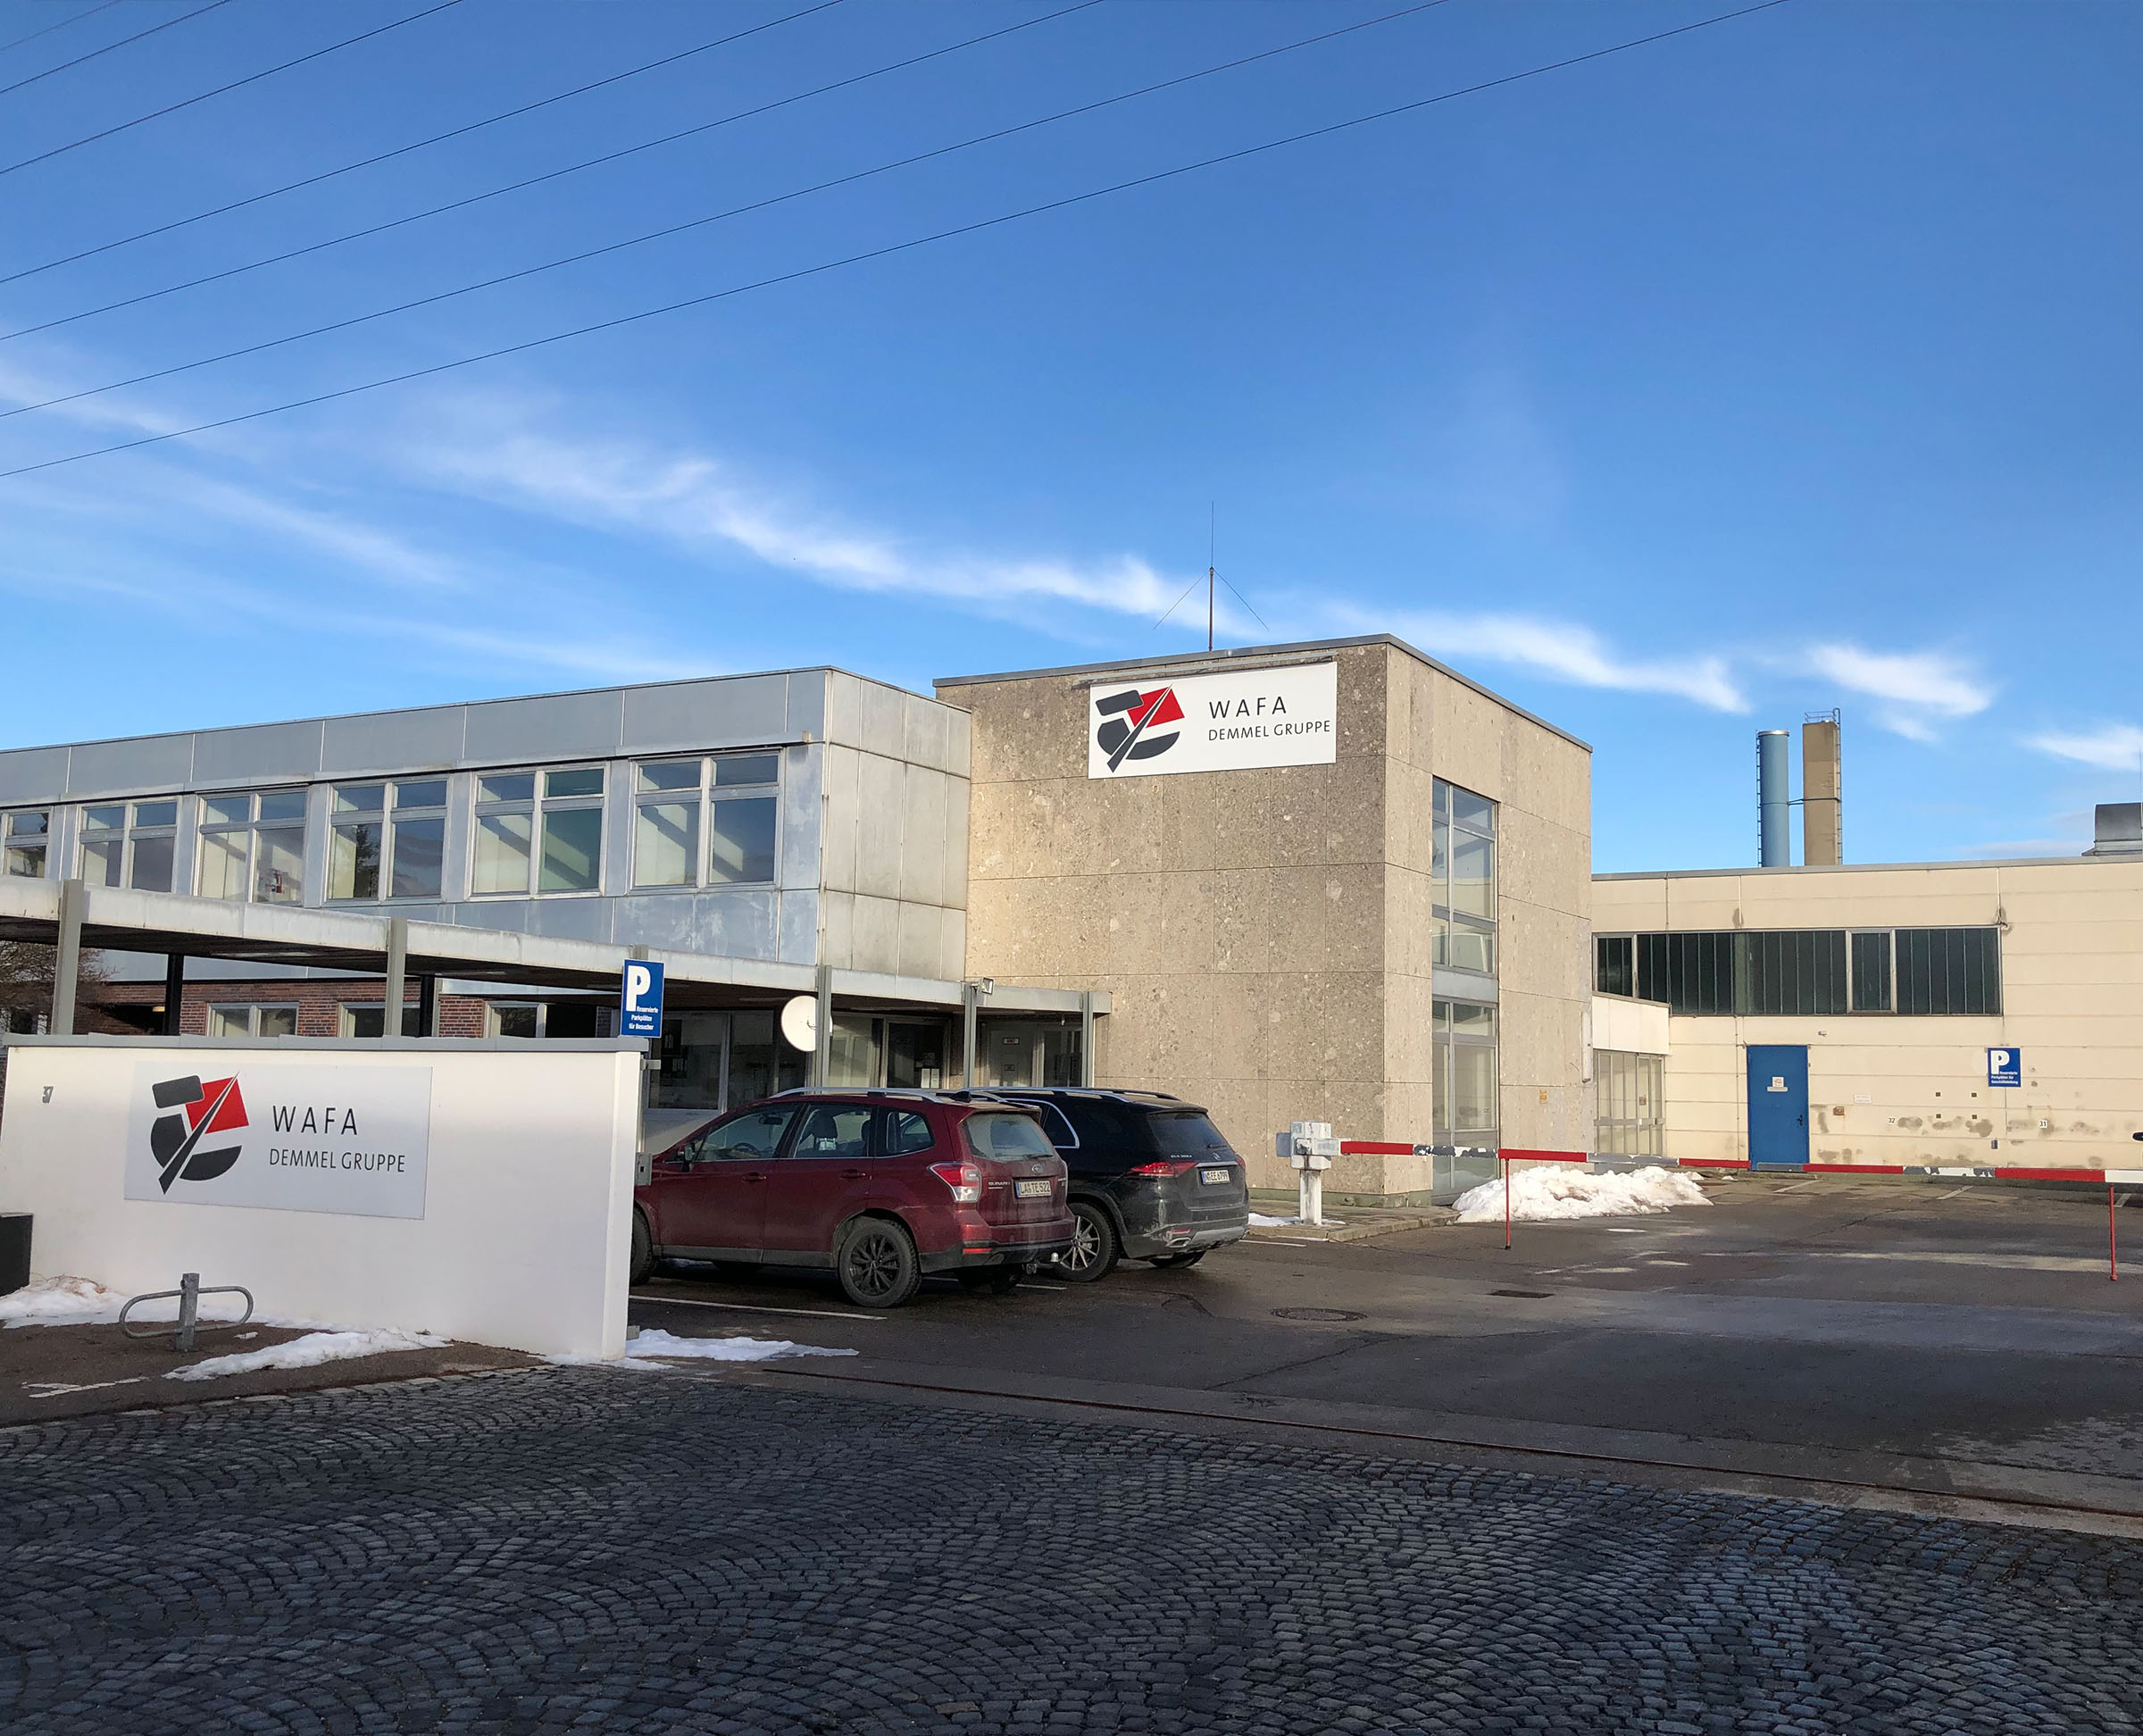 WAFA Germany GmbH - Betriebsausstattung wird nach Insolvenz versteigert 